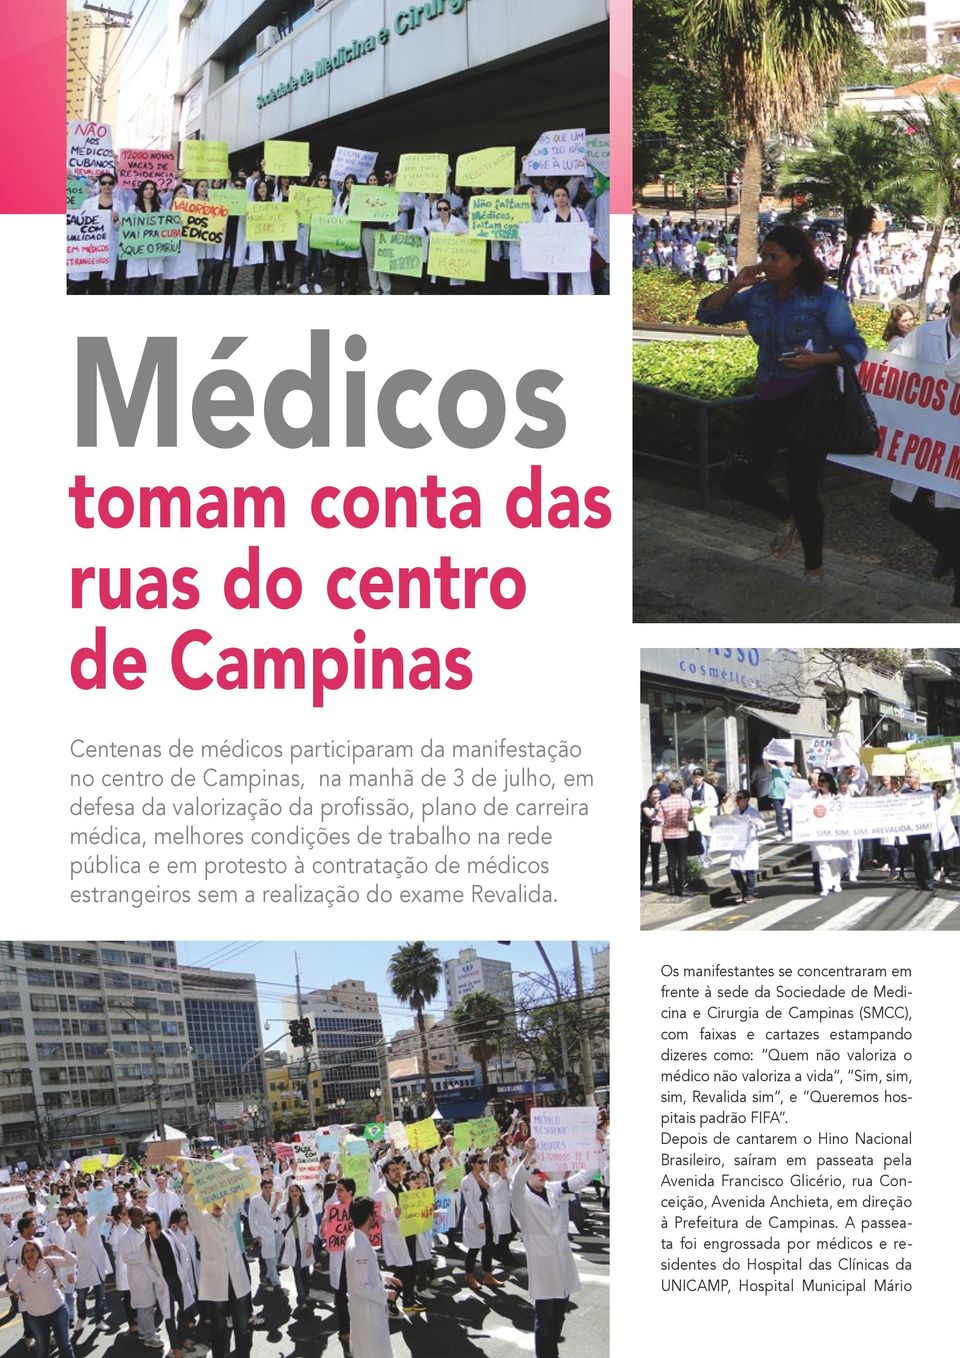 Os manifestantes se concentraram em frente à sede da Sociedade de Medicina e Cirurgia de Campinas (SMCC), com faixas e cartazes estampando dizeres como: Quem não valoriza o médico não valoriza a